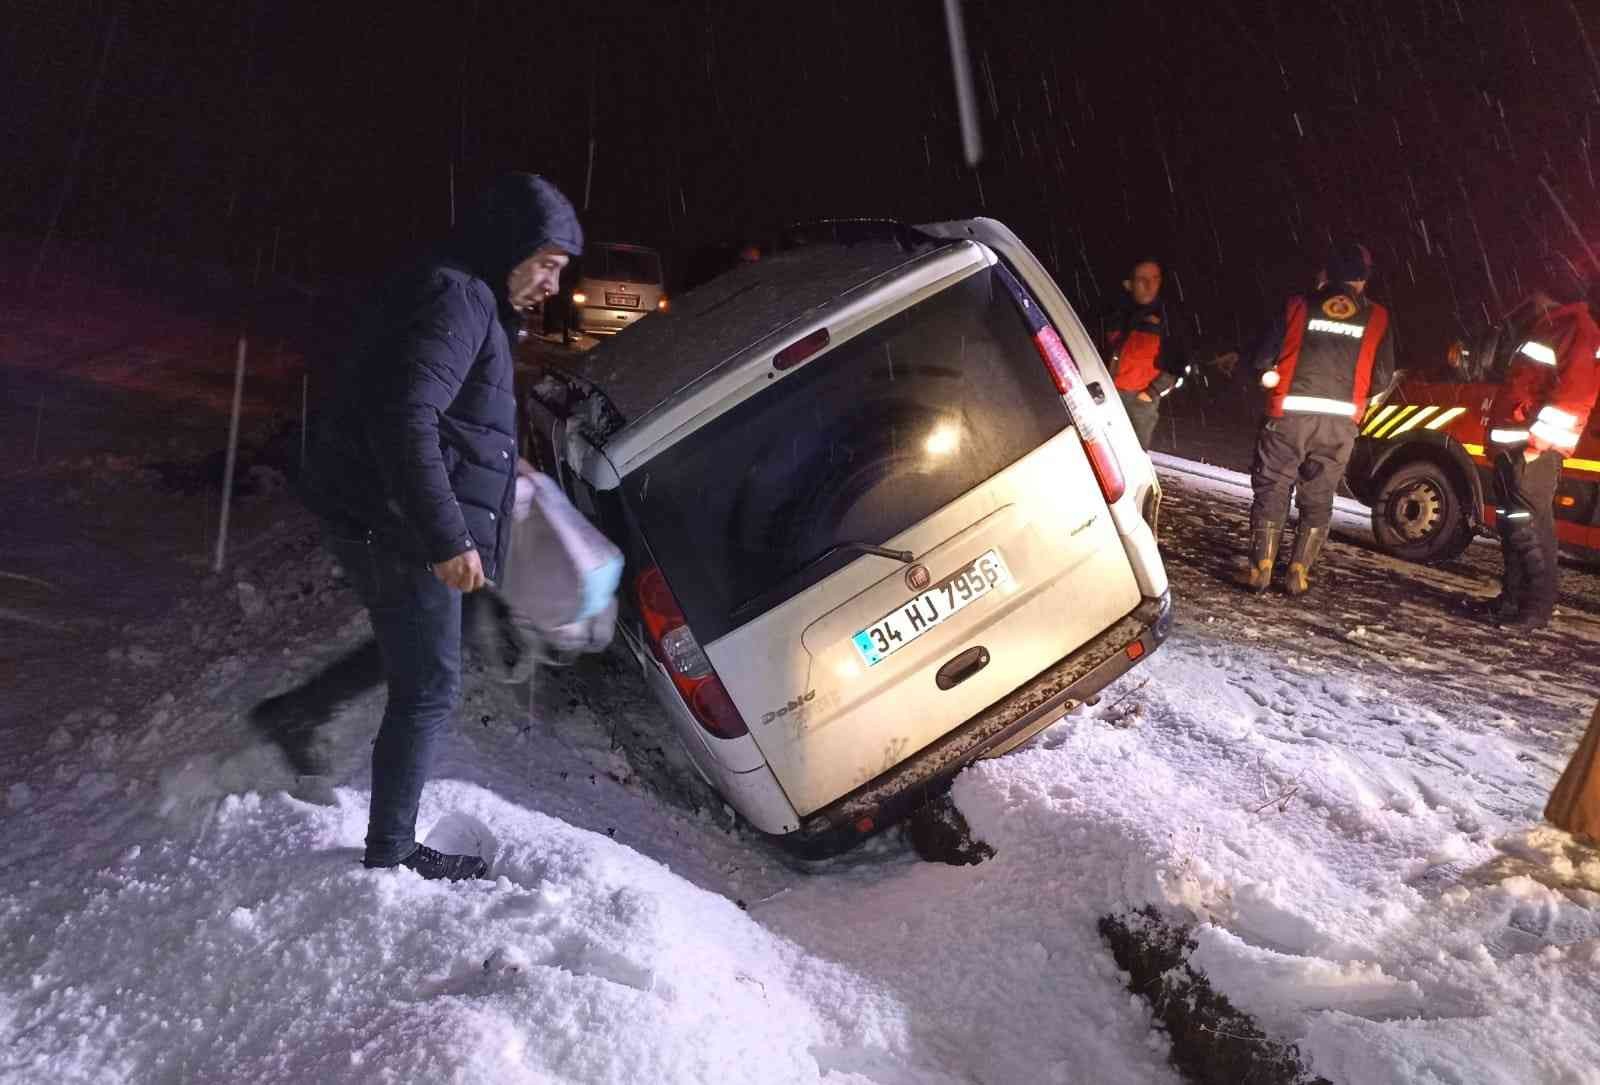 Ağrı’da kar yağışı kazayı getirdi: 3 yaralı #agri